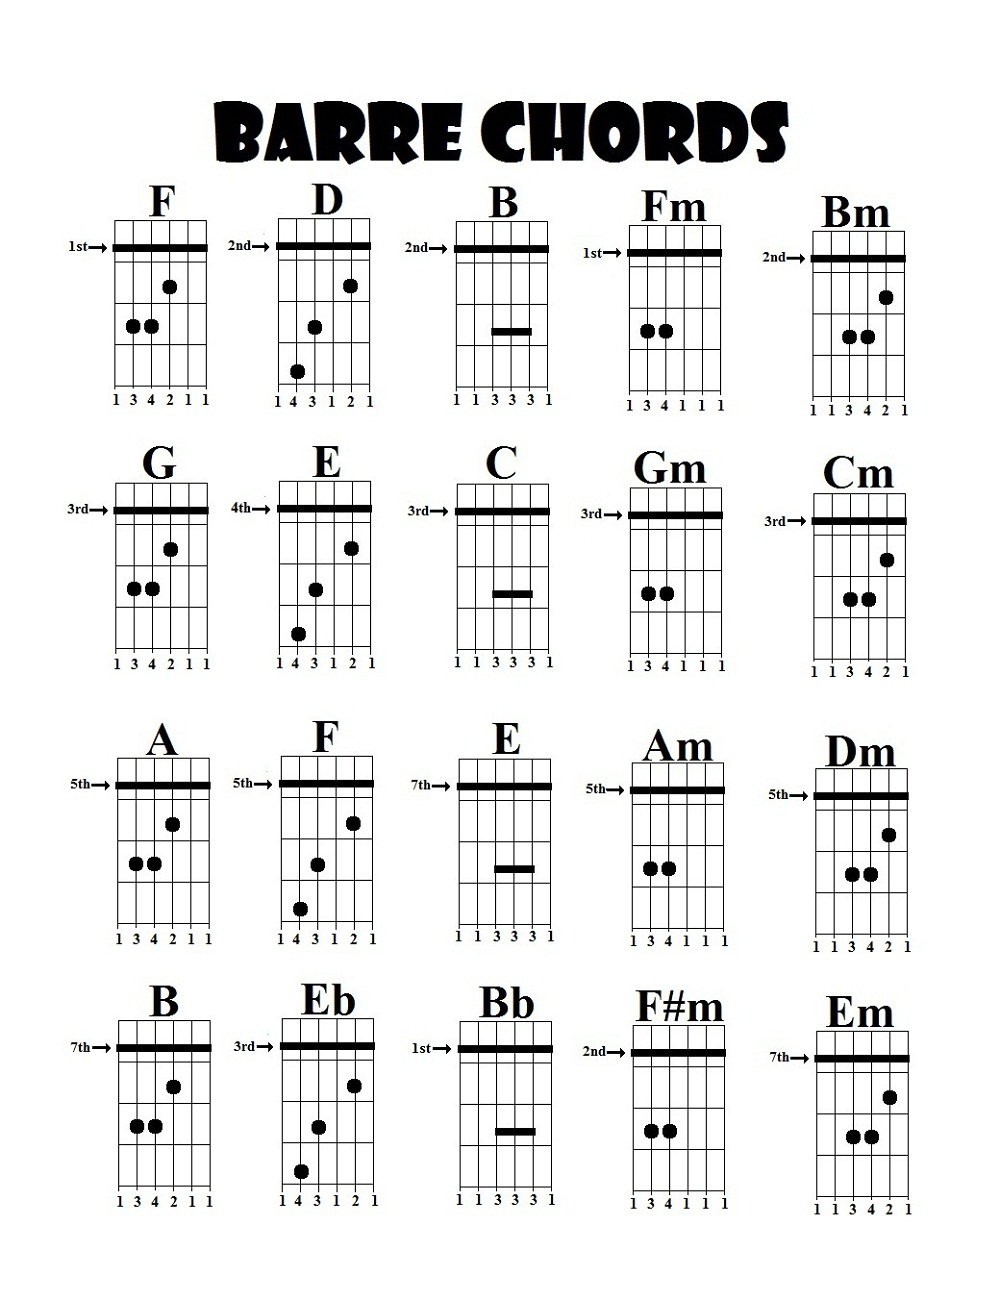 guitar bar chords pdf